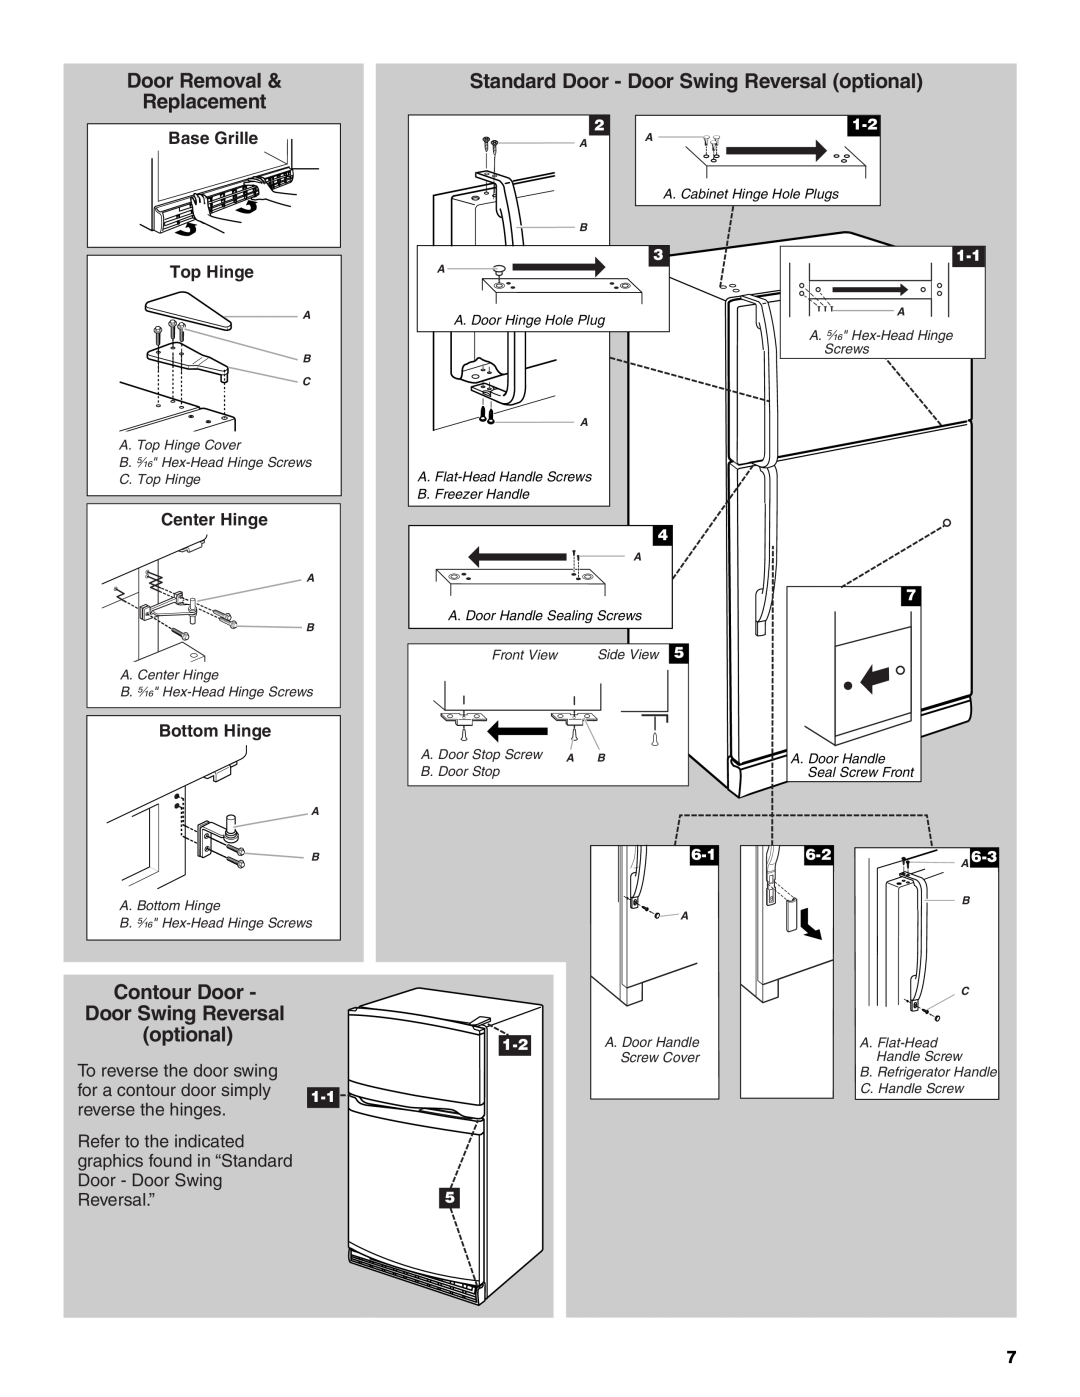 Whirlpool W10312242A Door Removal, Standard Door - Door Swing Reversal optional, Replacement, Contour Door, Top Hinge 